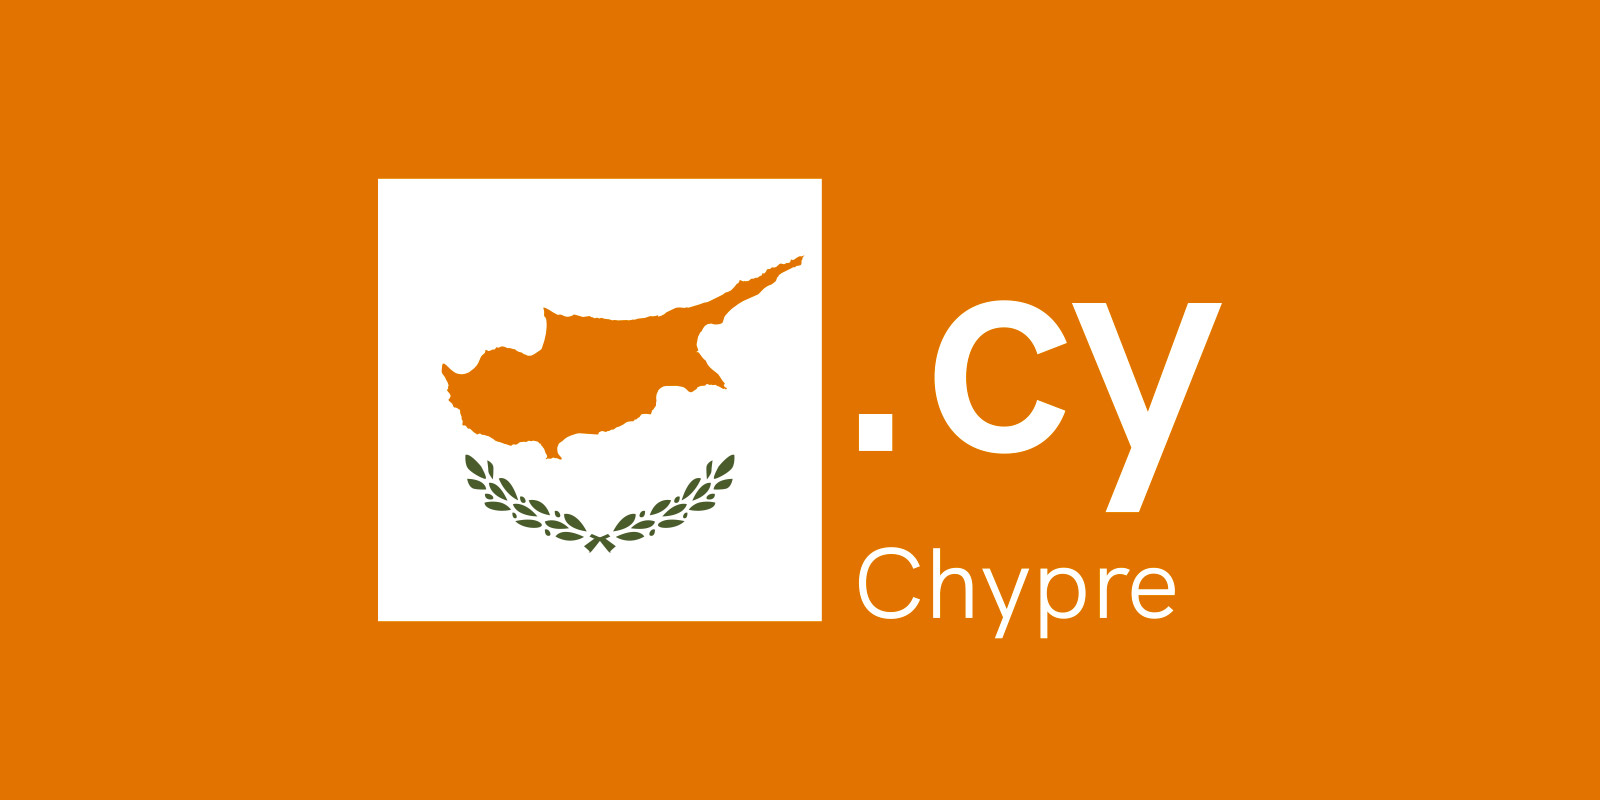 Chypre a son nom de domaine, le .CY !